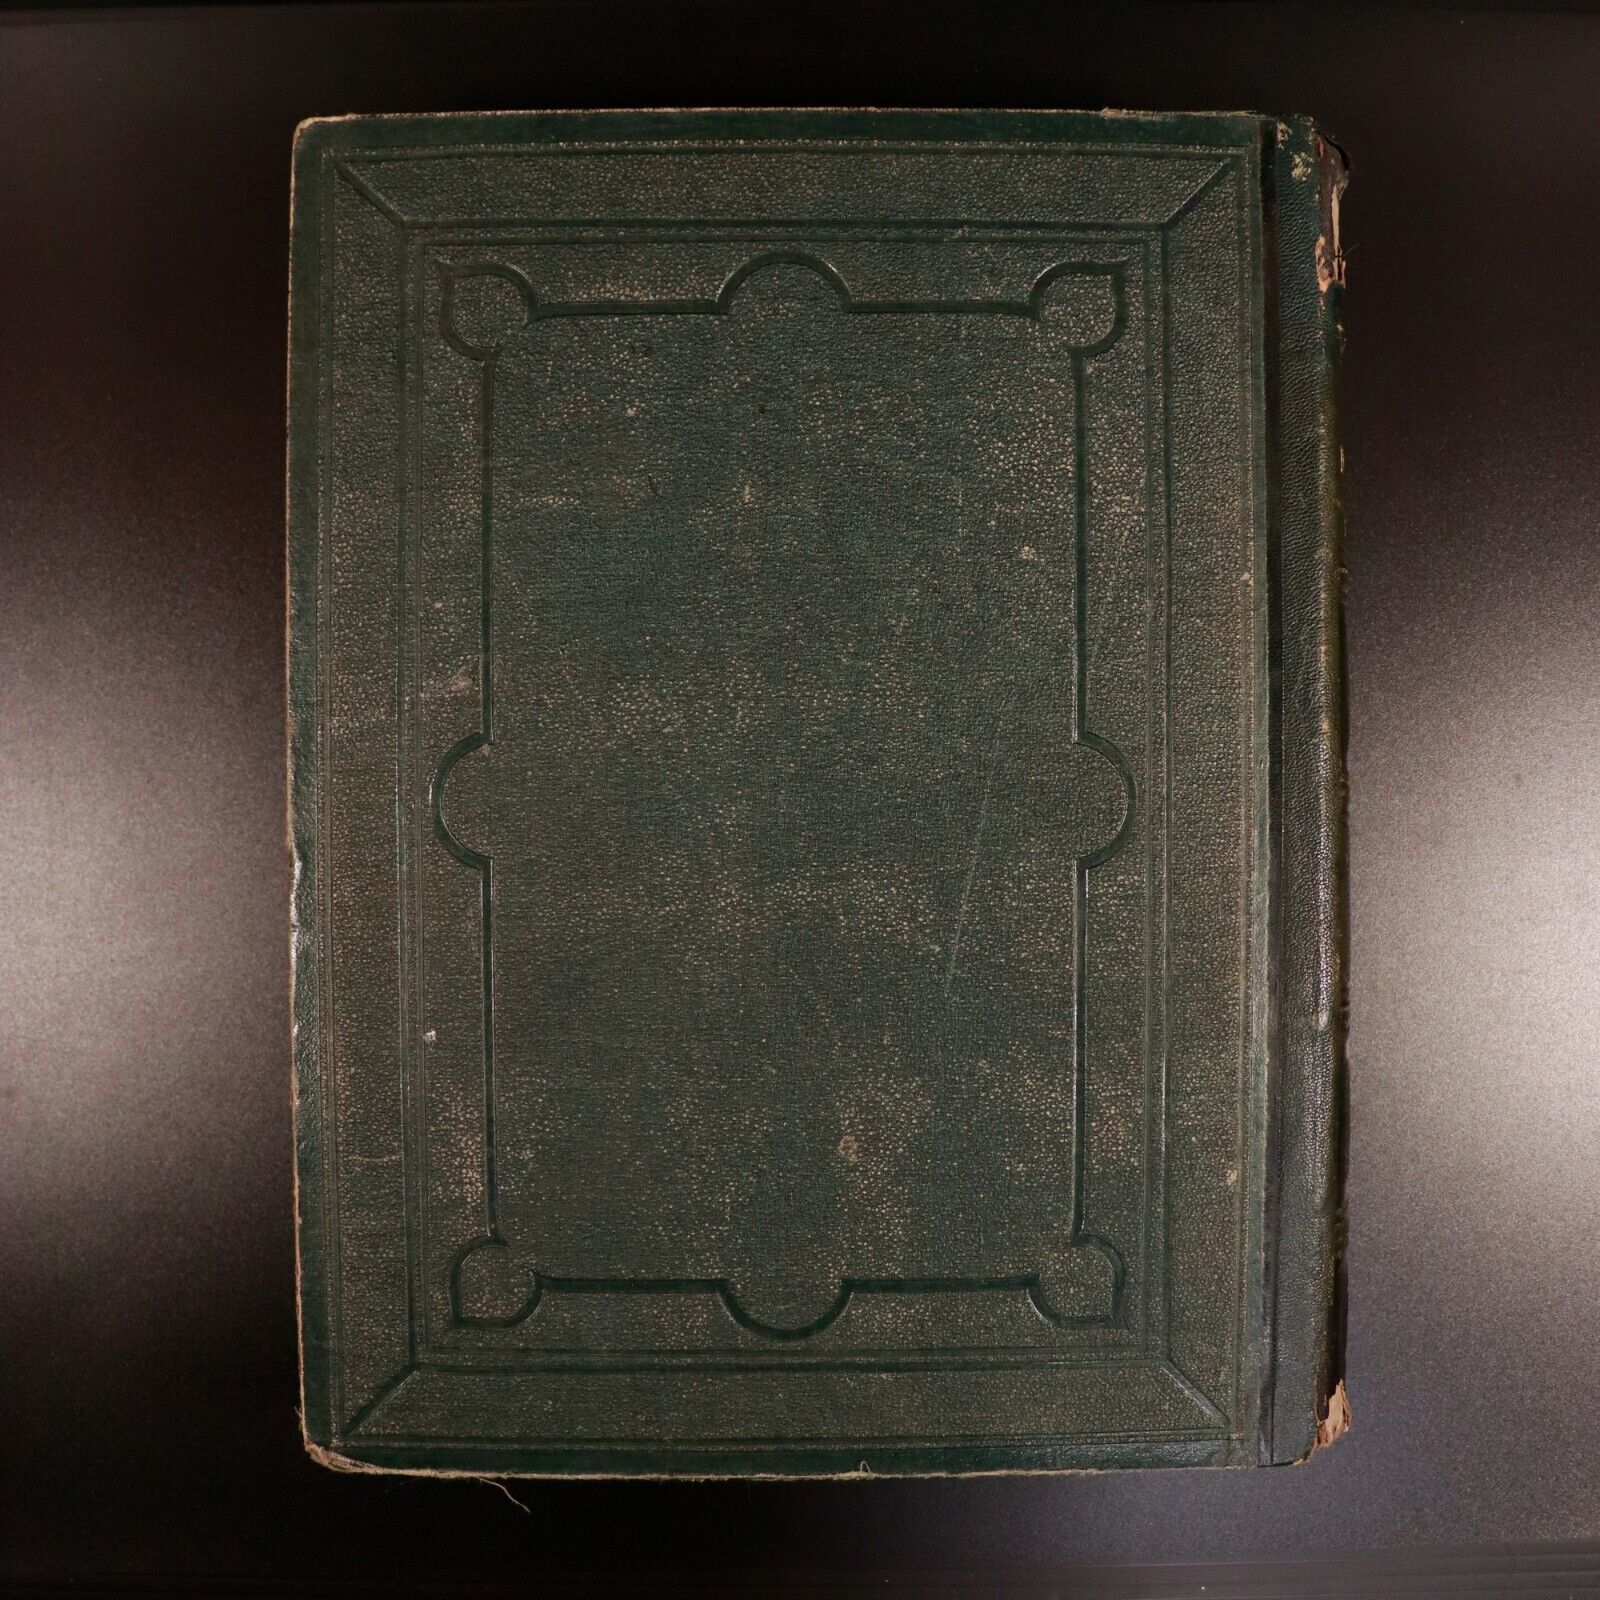 1869 Grand Dictionnaire Universel Du XIX Siecle Antique History Book P. Larousse